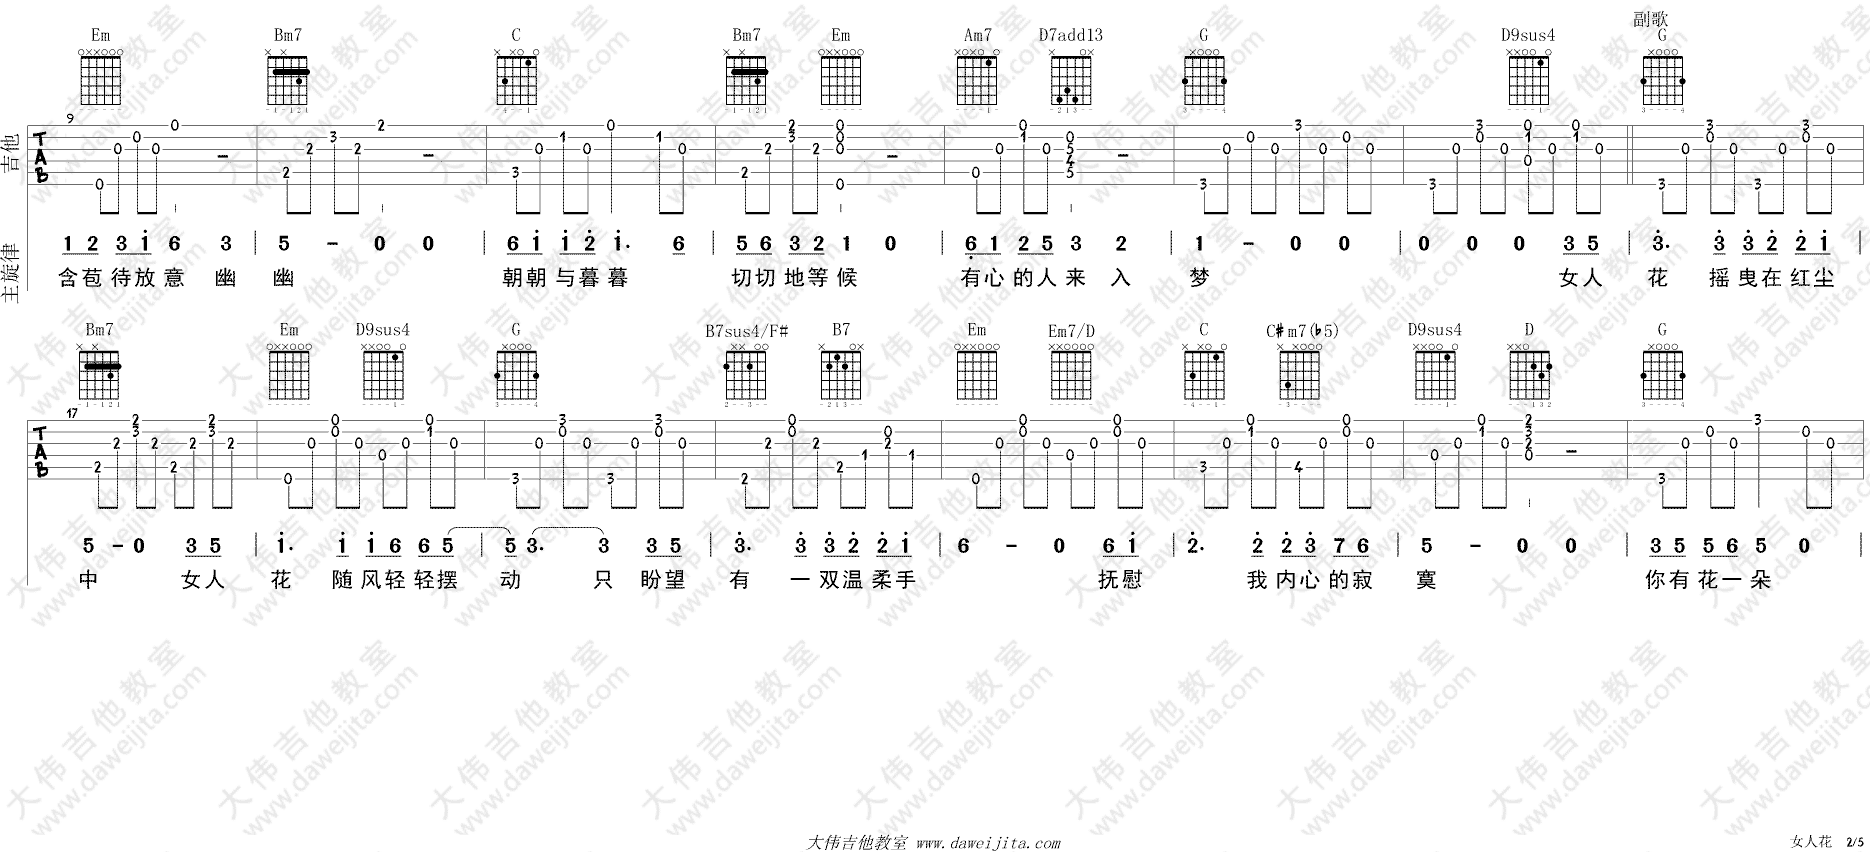 梅艳芳《女人花》吉他谱(G转A调)-Guitar Music Score